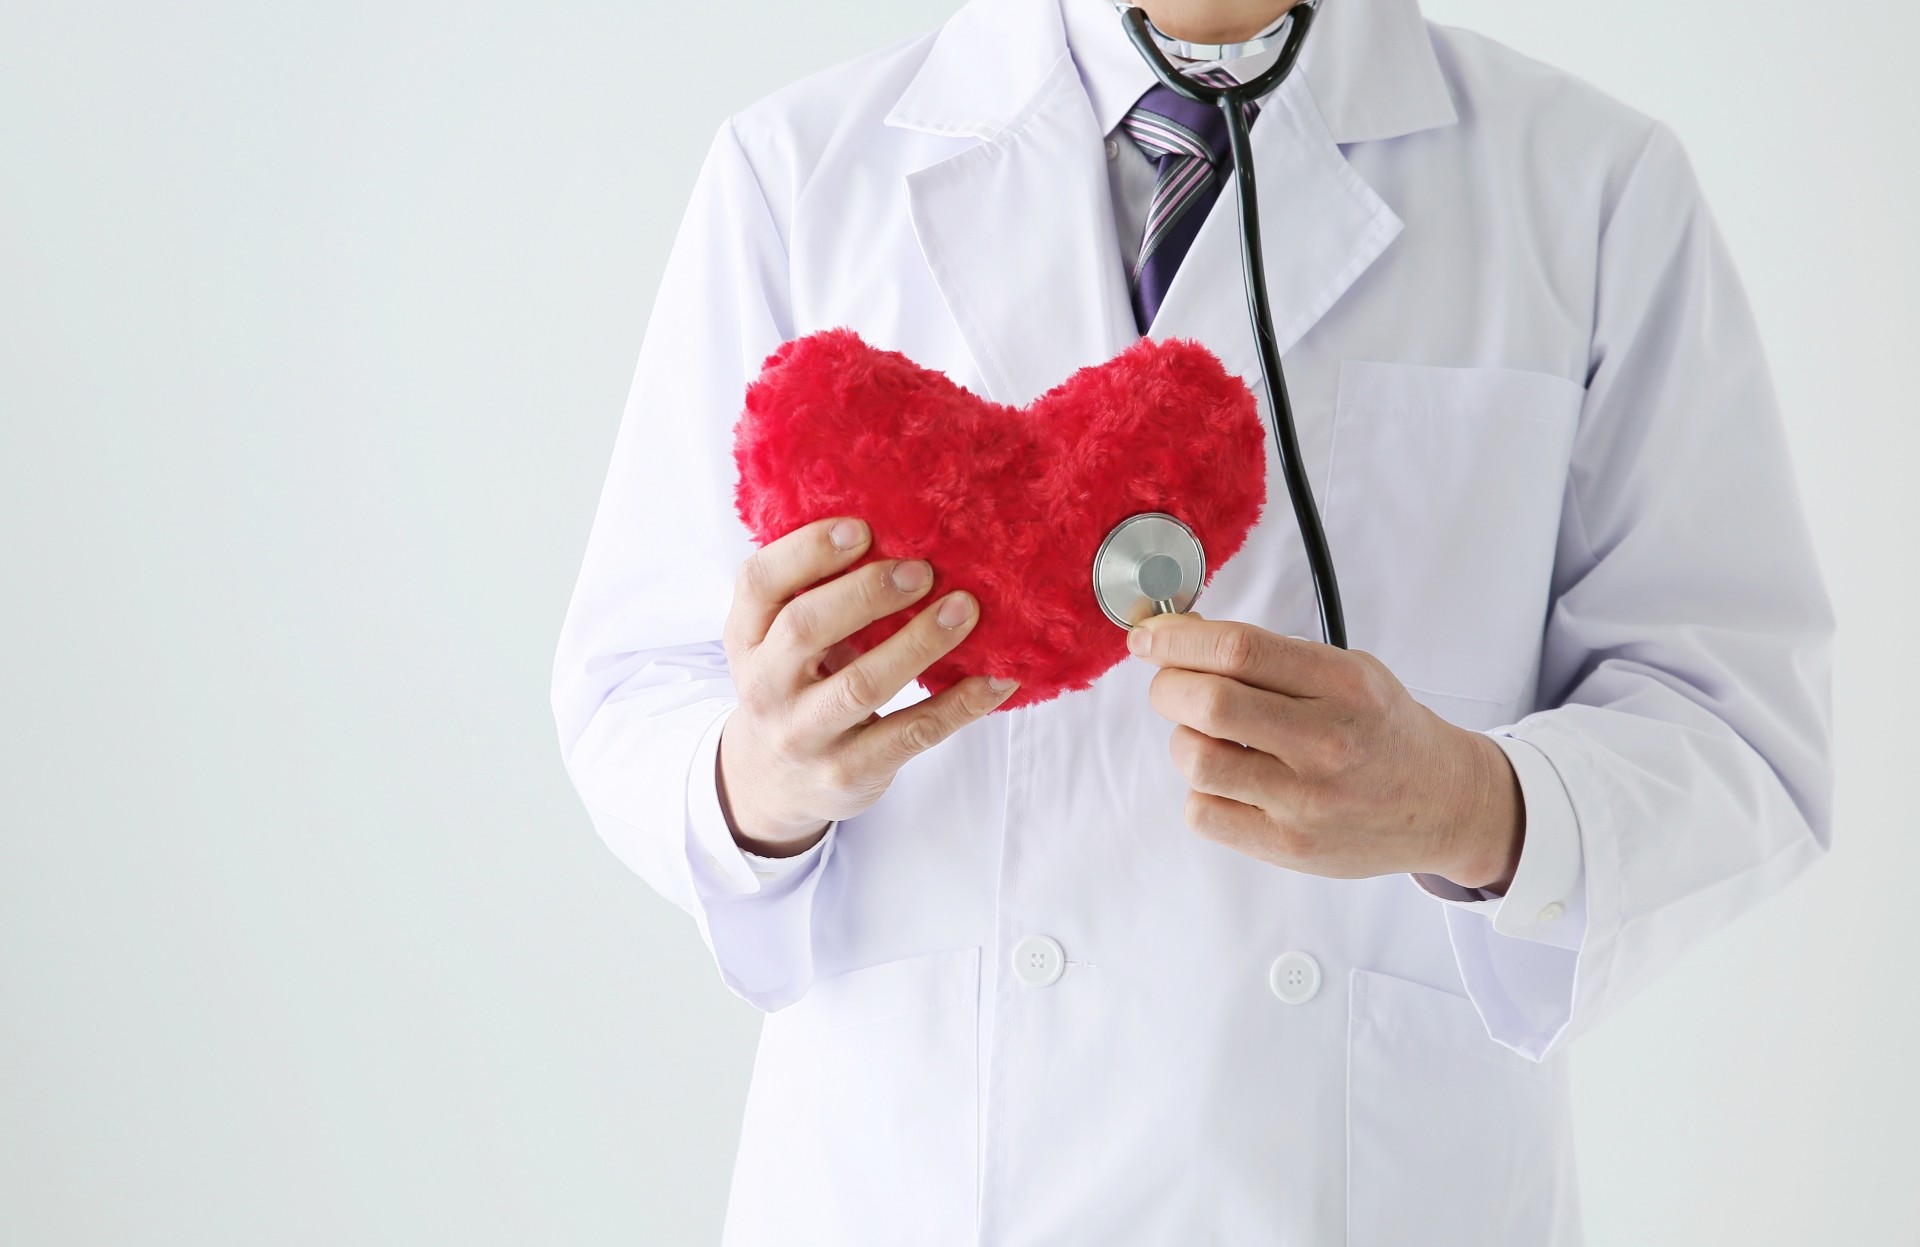 心臓血管外科 常勤医師の年収アップ交渉術 転職面接で使える具体的手法